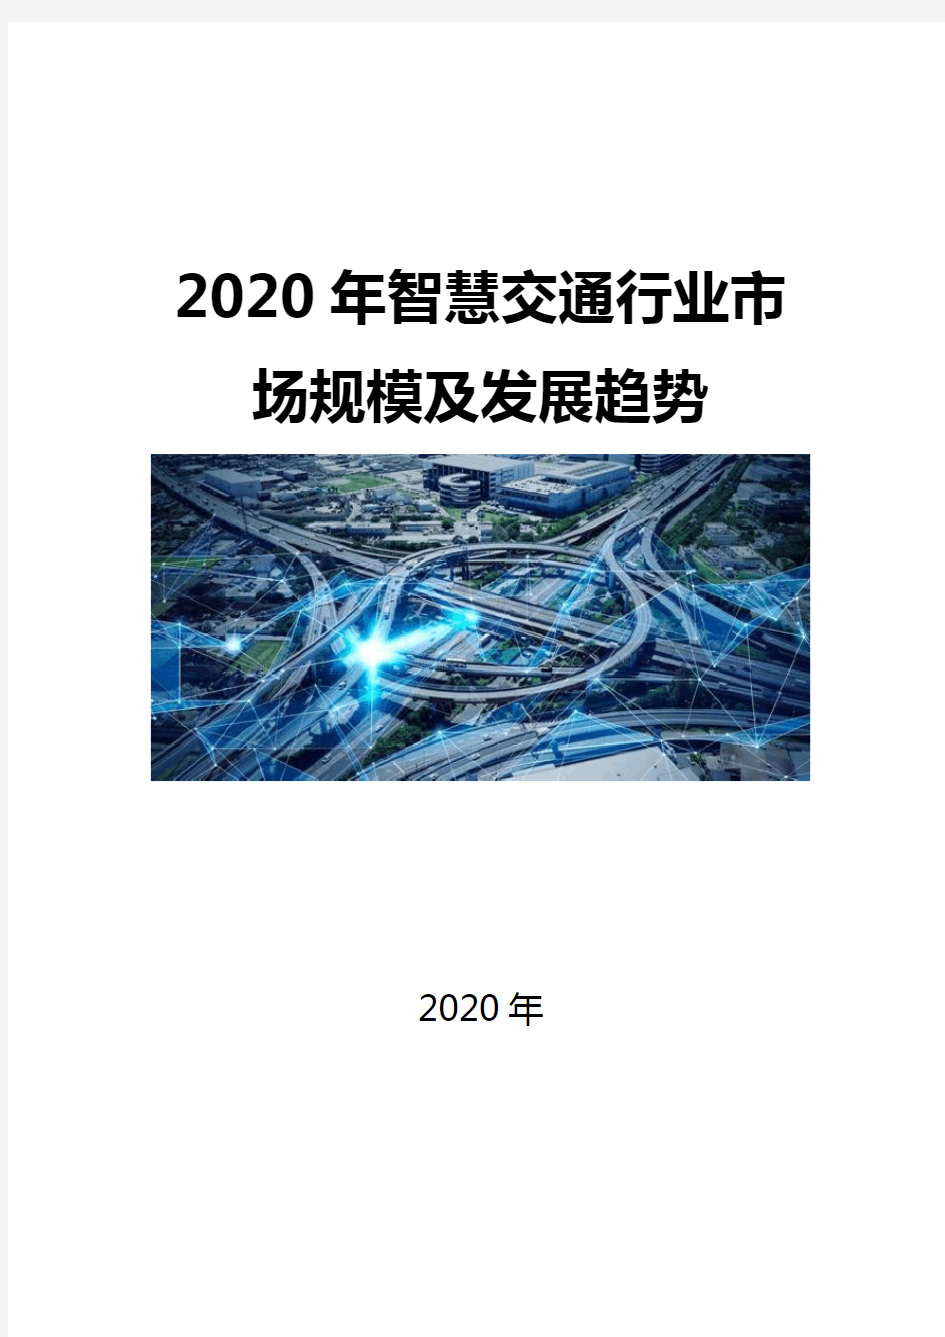 2020智慧交通行业市场规模及发展趋势